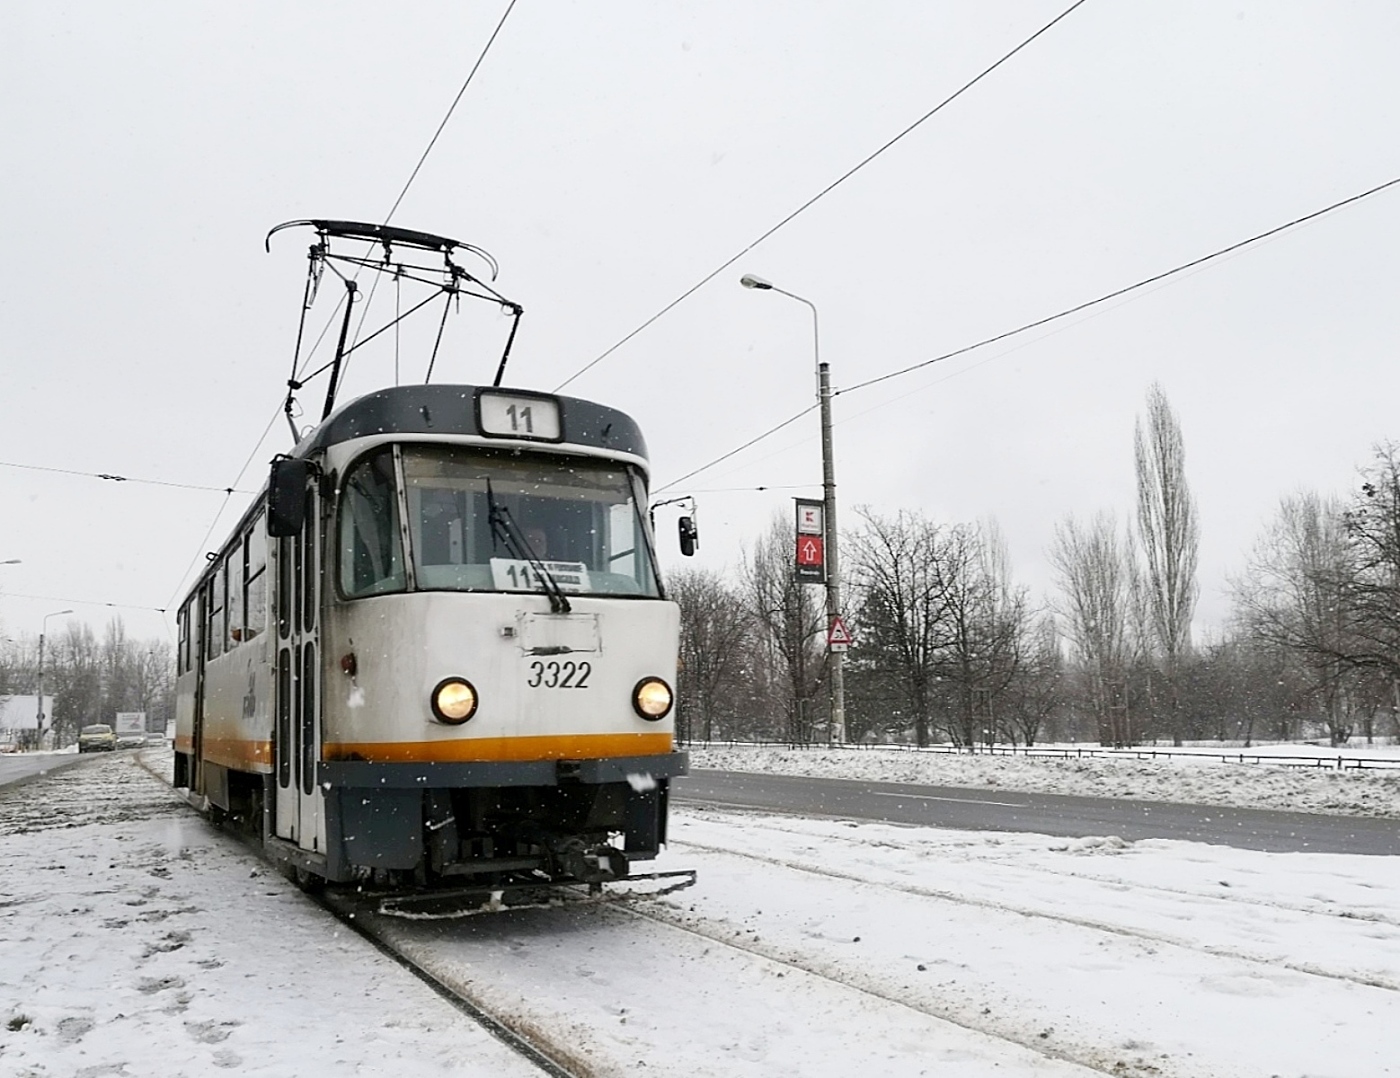 Tatra T4R #3322